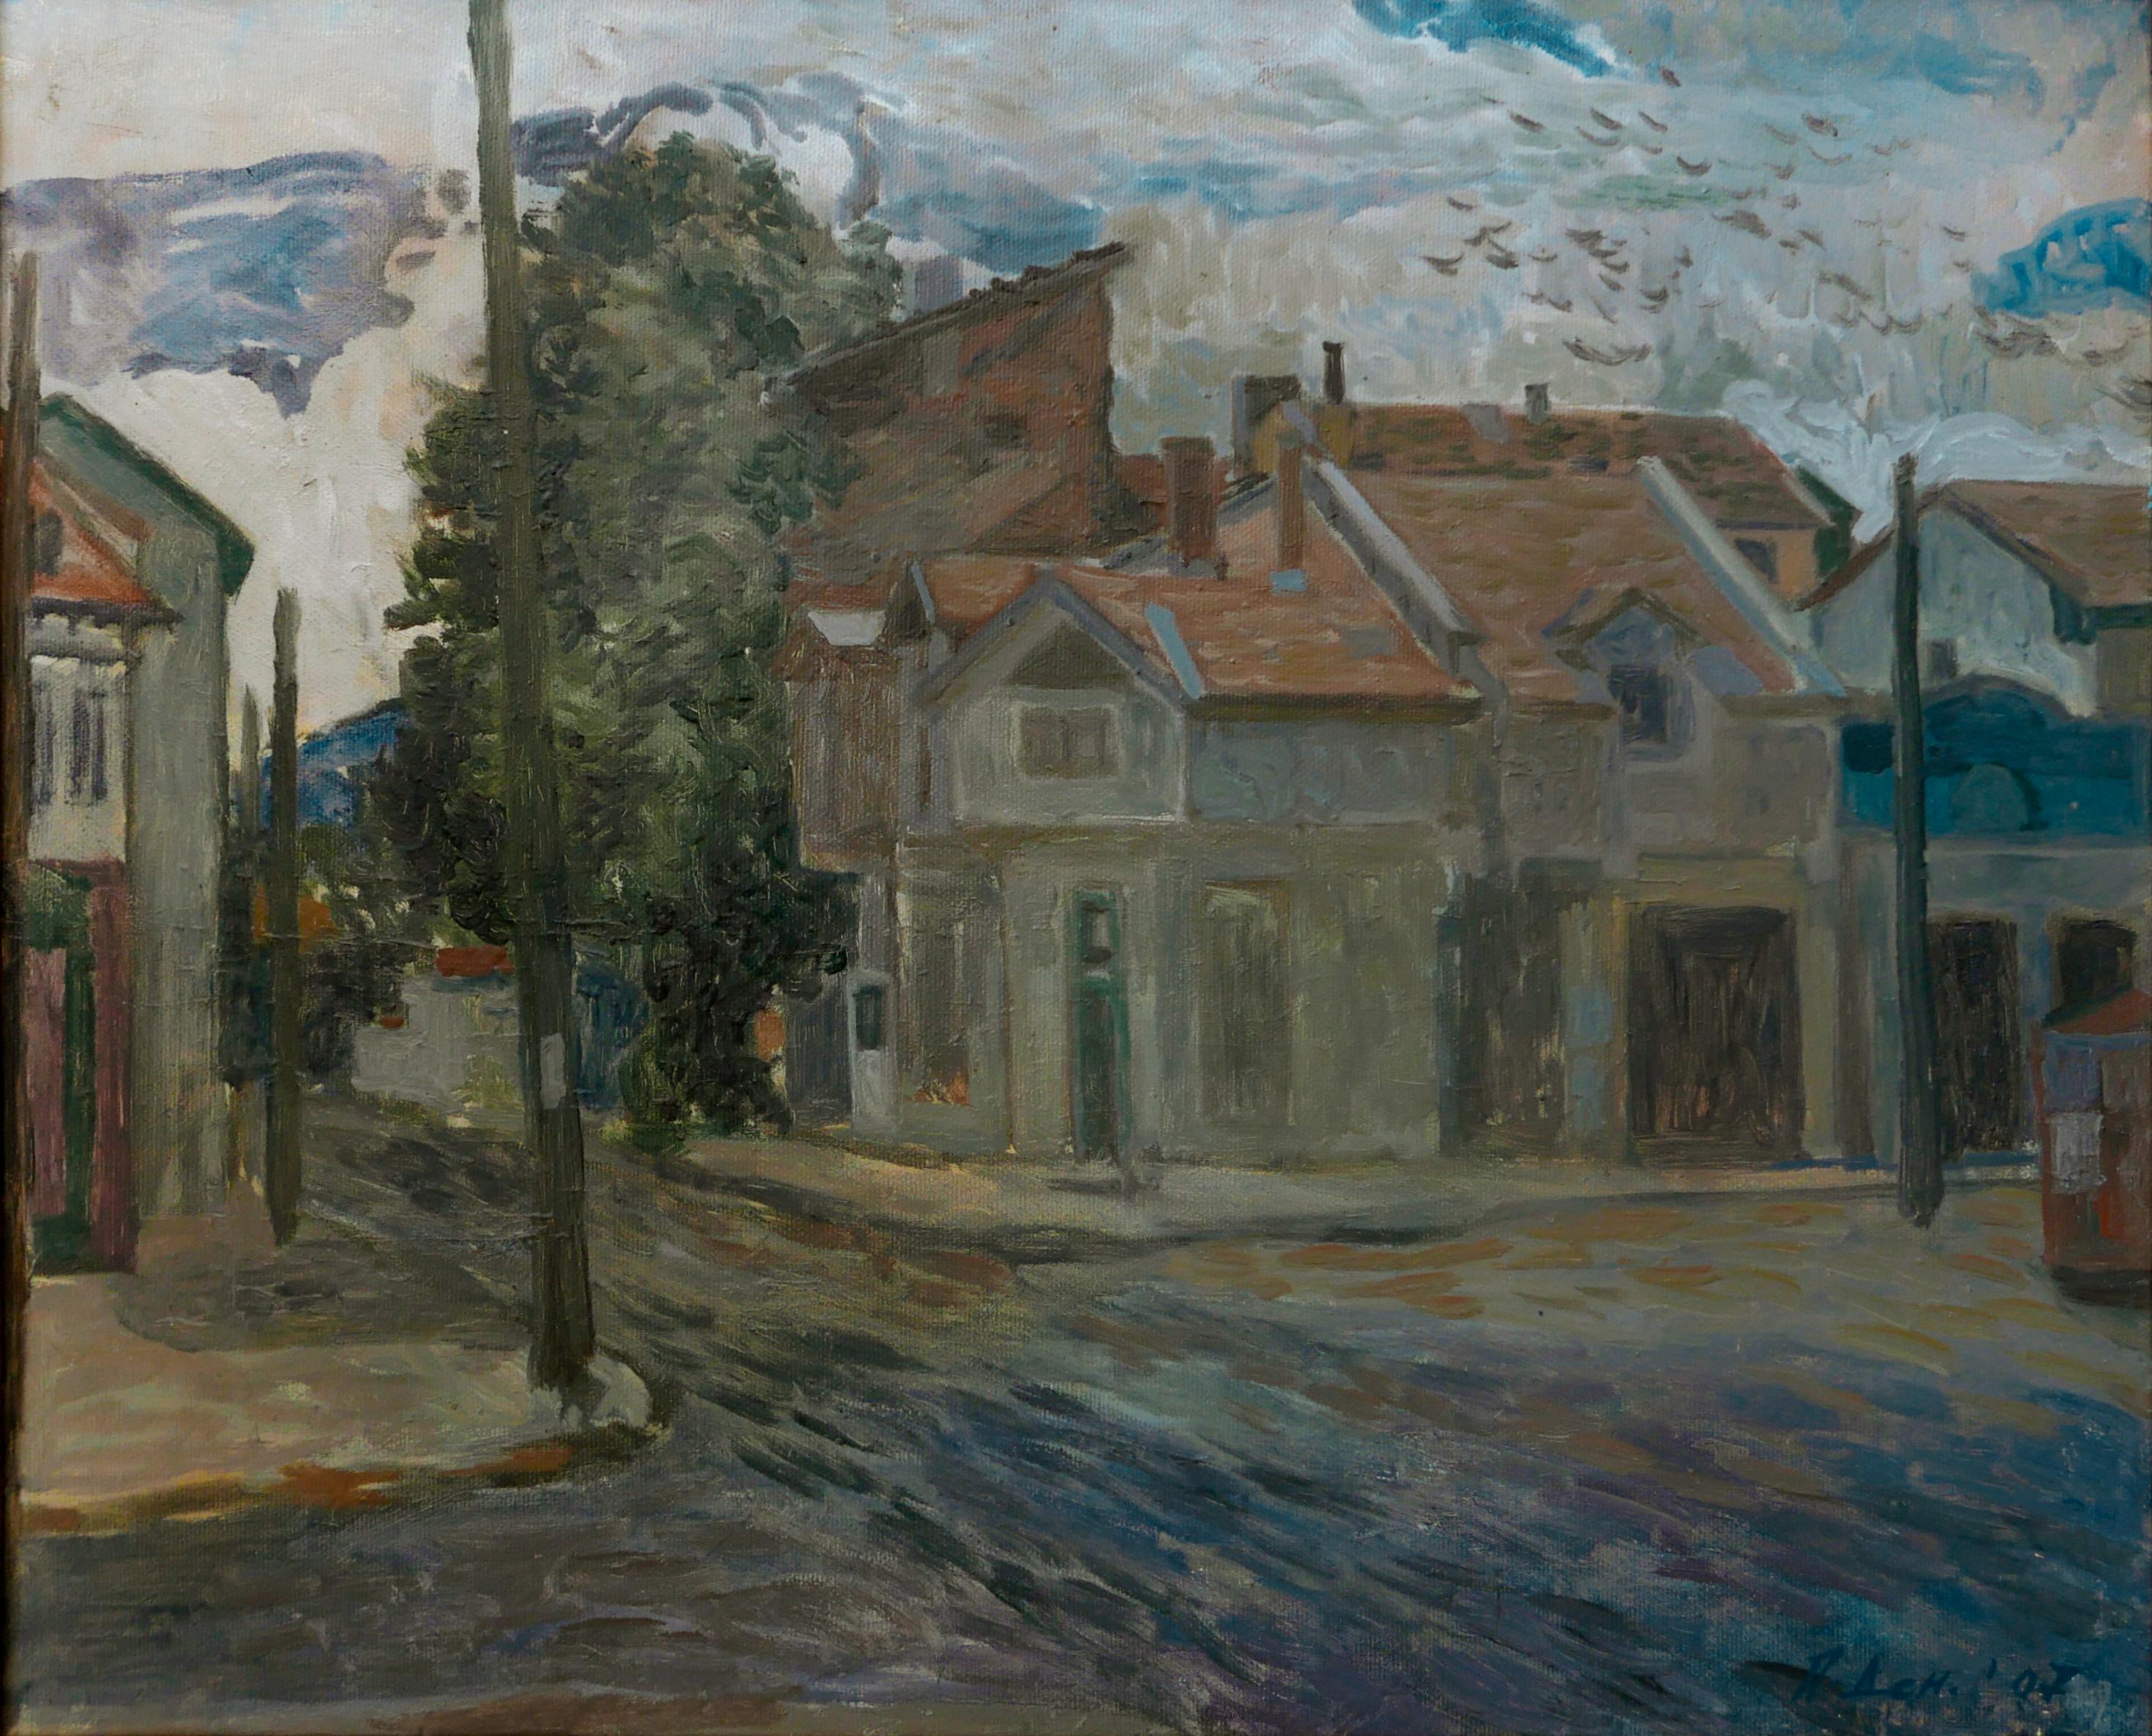 Petya Deneva Landscape Painting – The Little Town - Ölgemälde in den Farben Weiß Gelb Blau Braun Grün